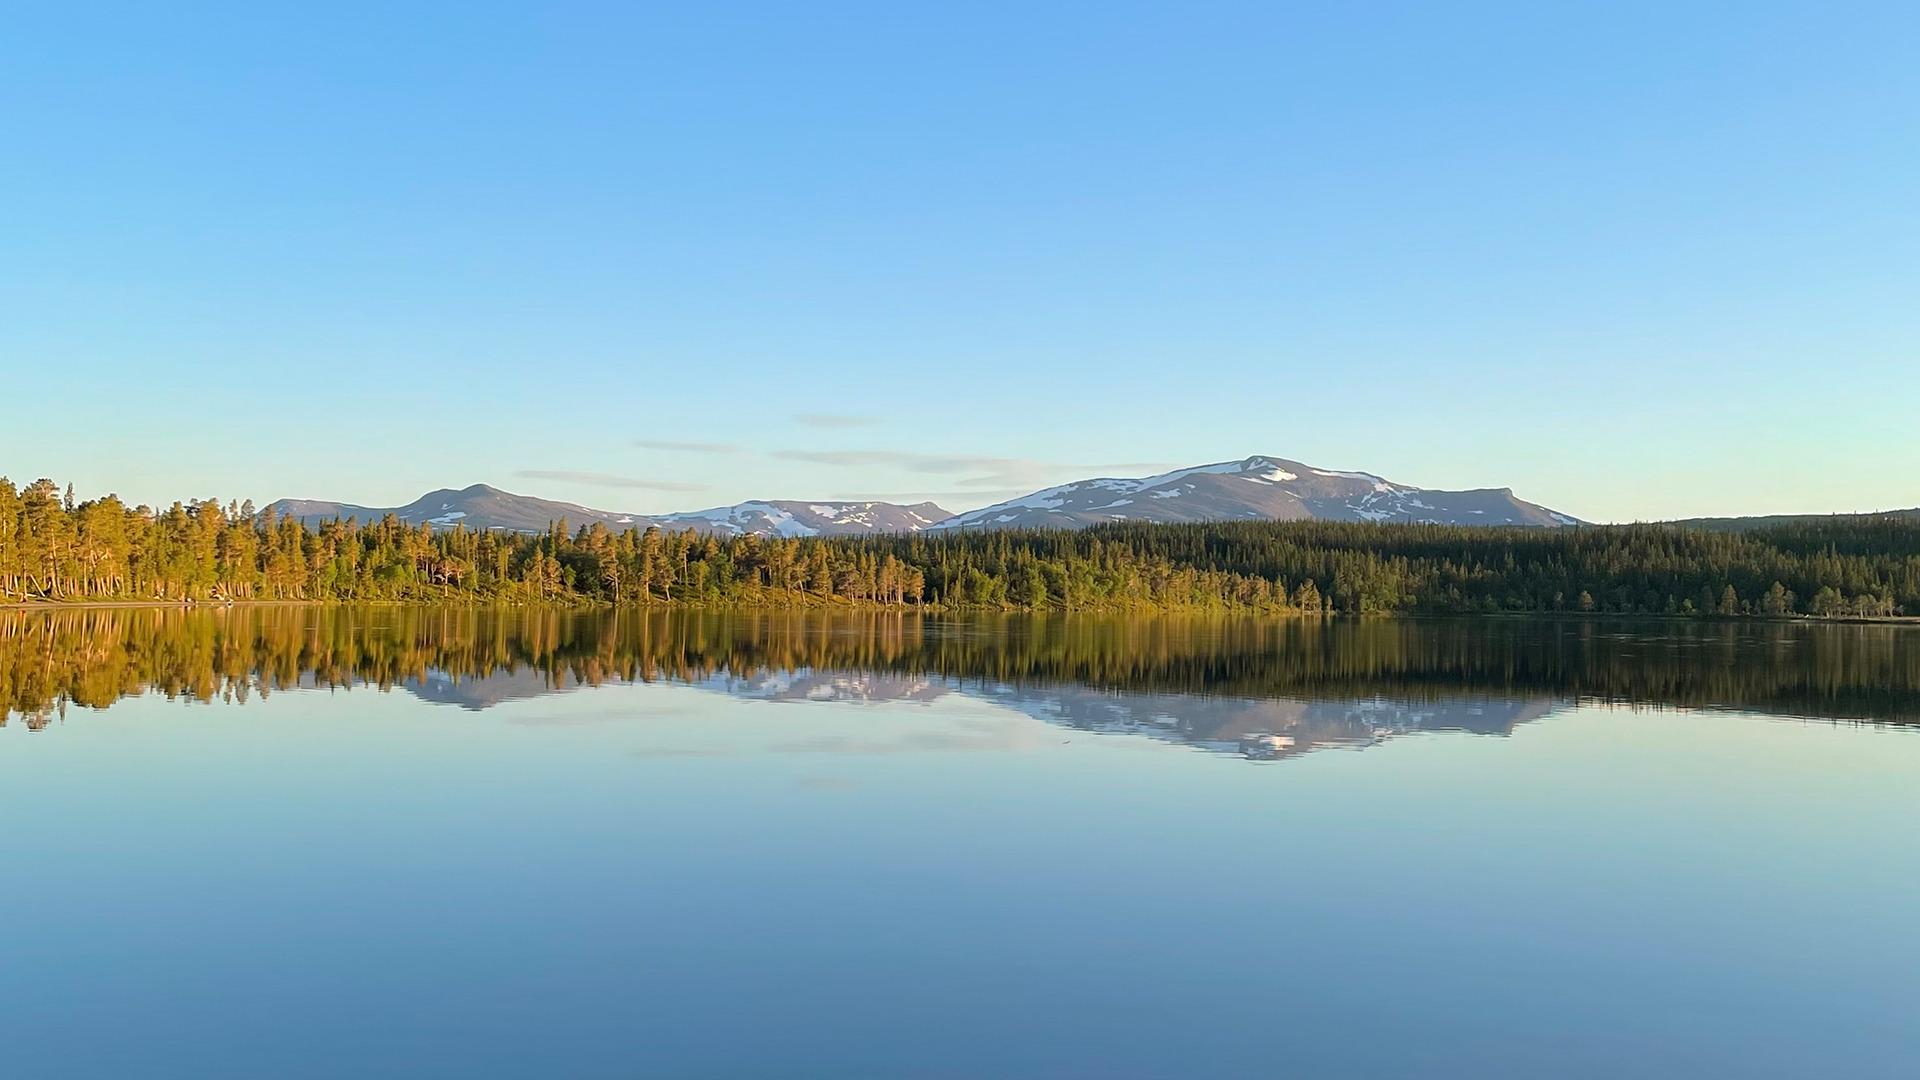 L'eau du lac Nulltjärn est calme et reflète le ciel bleu, les forêts et les montagnes environnantes.